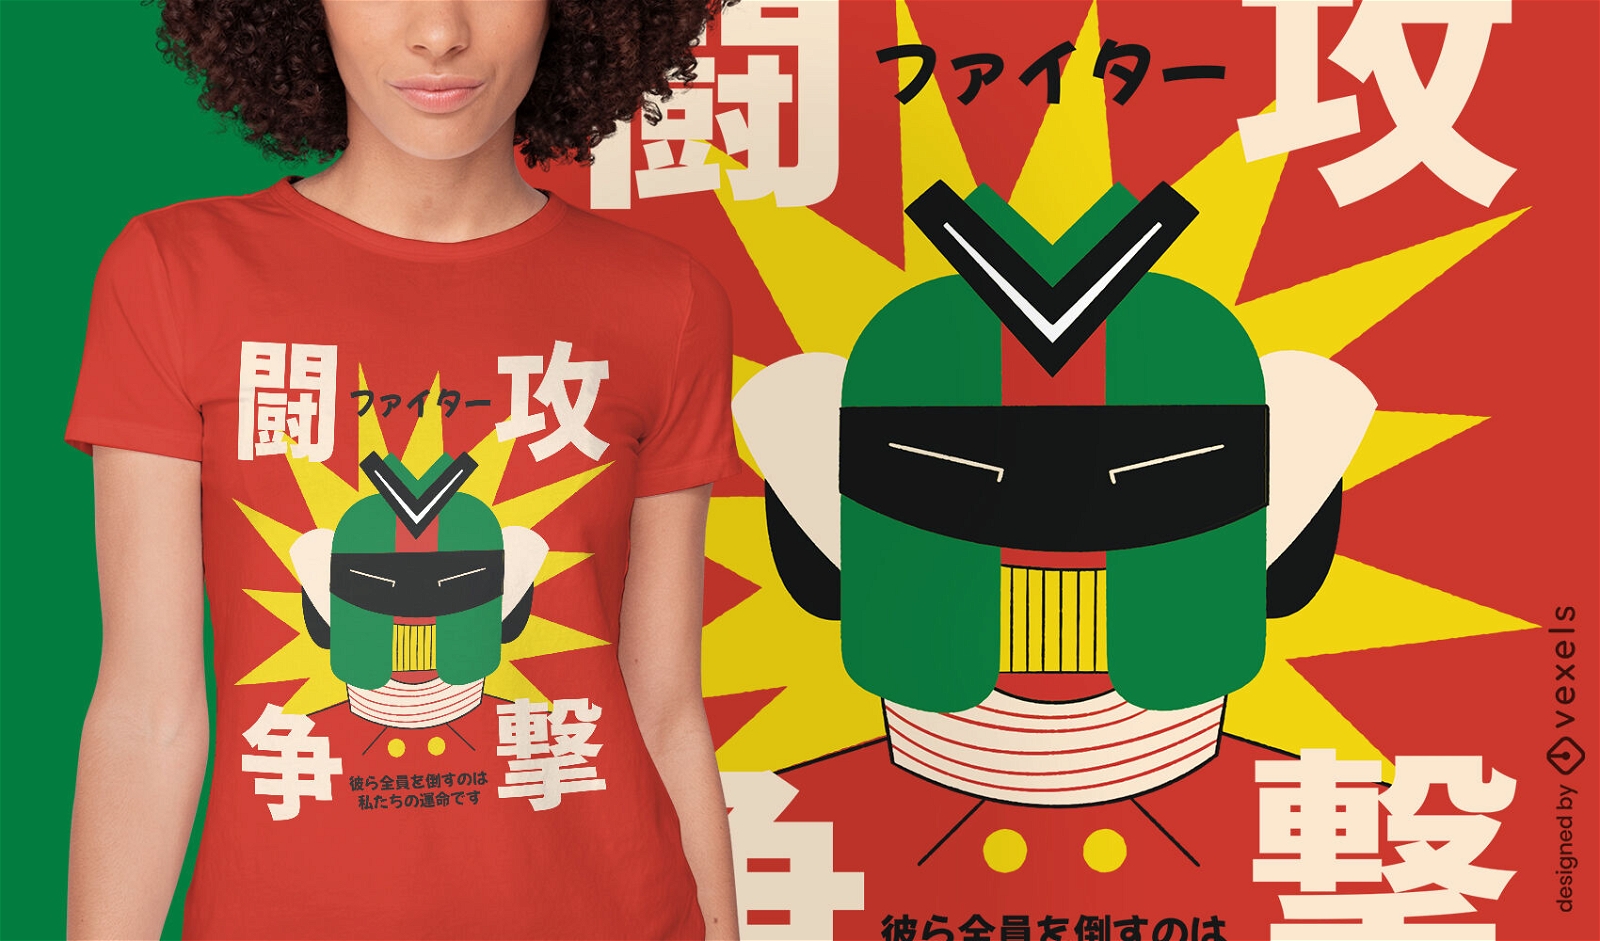 Japanese robot head t-shirt design